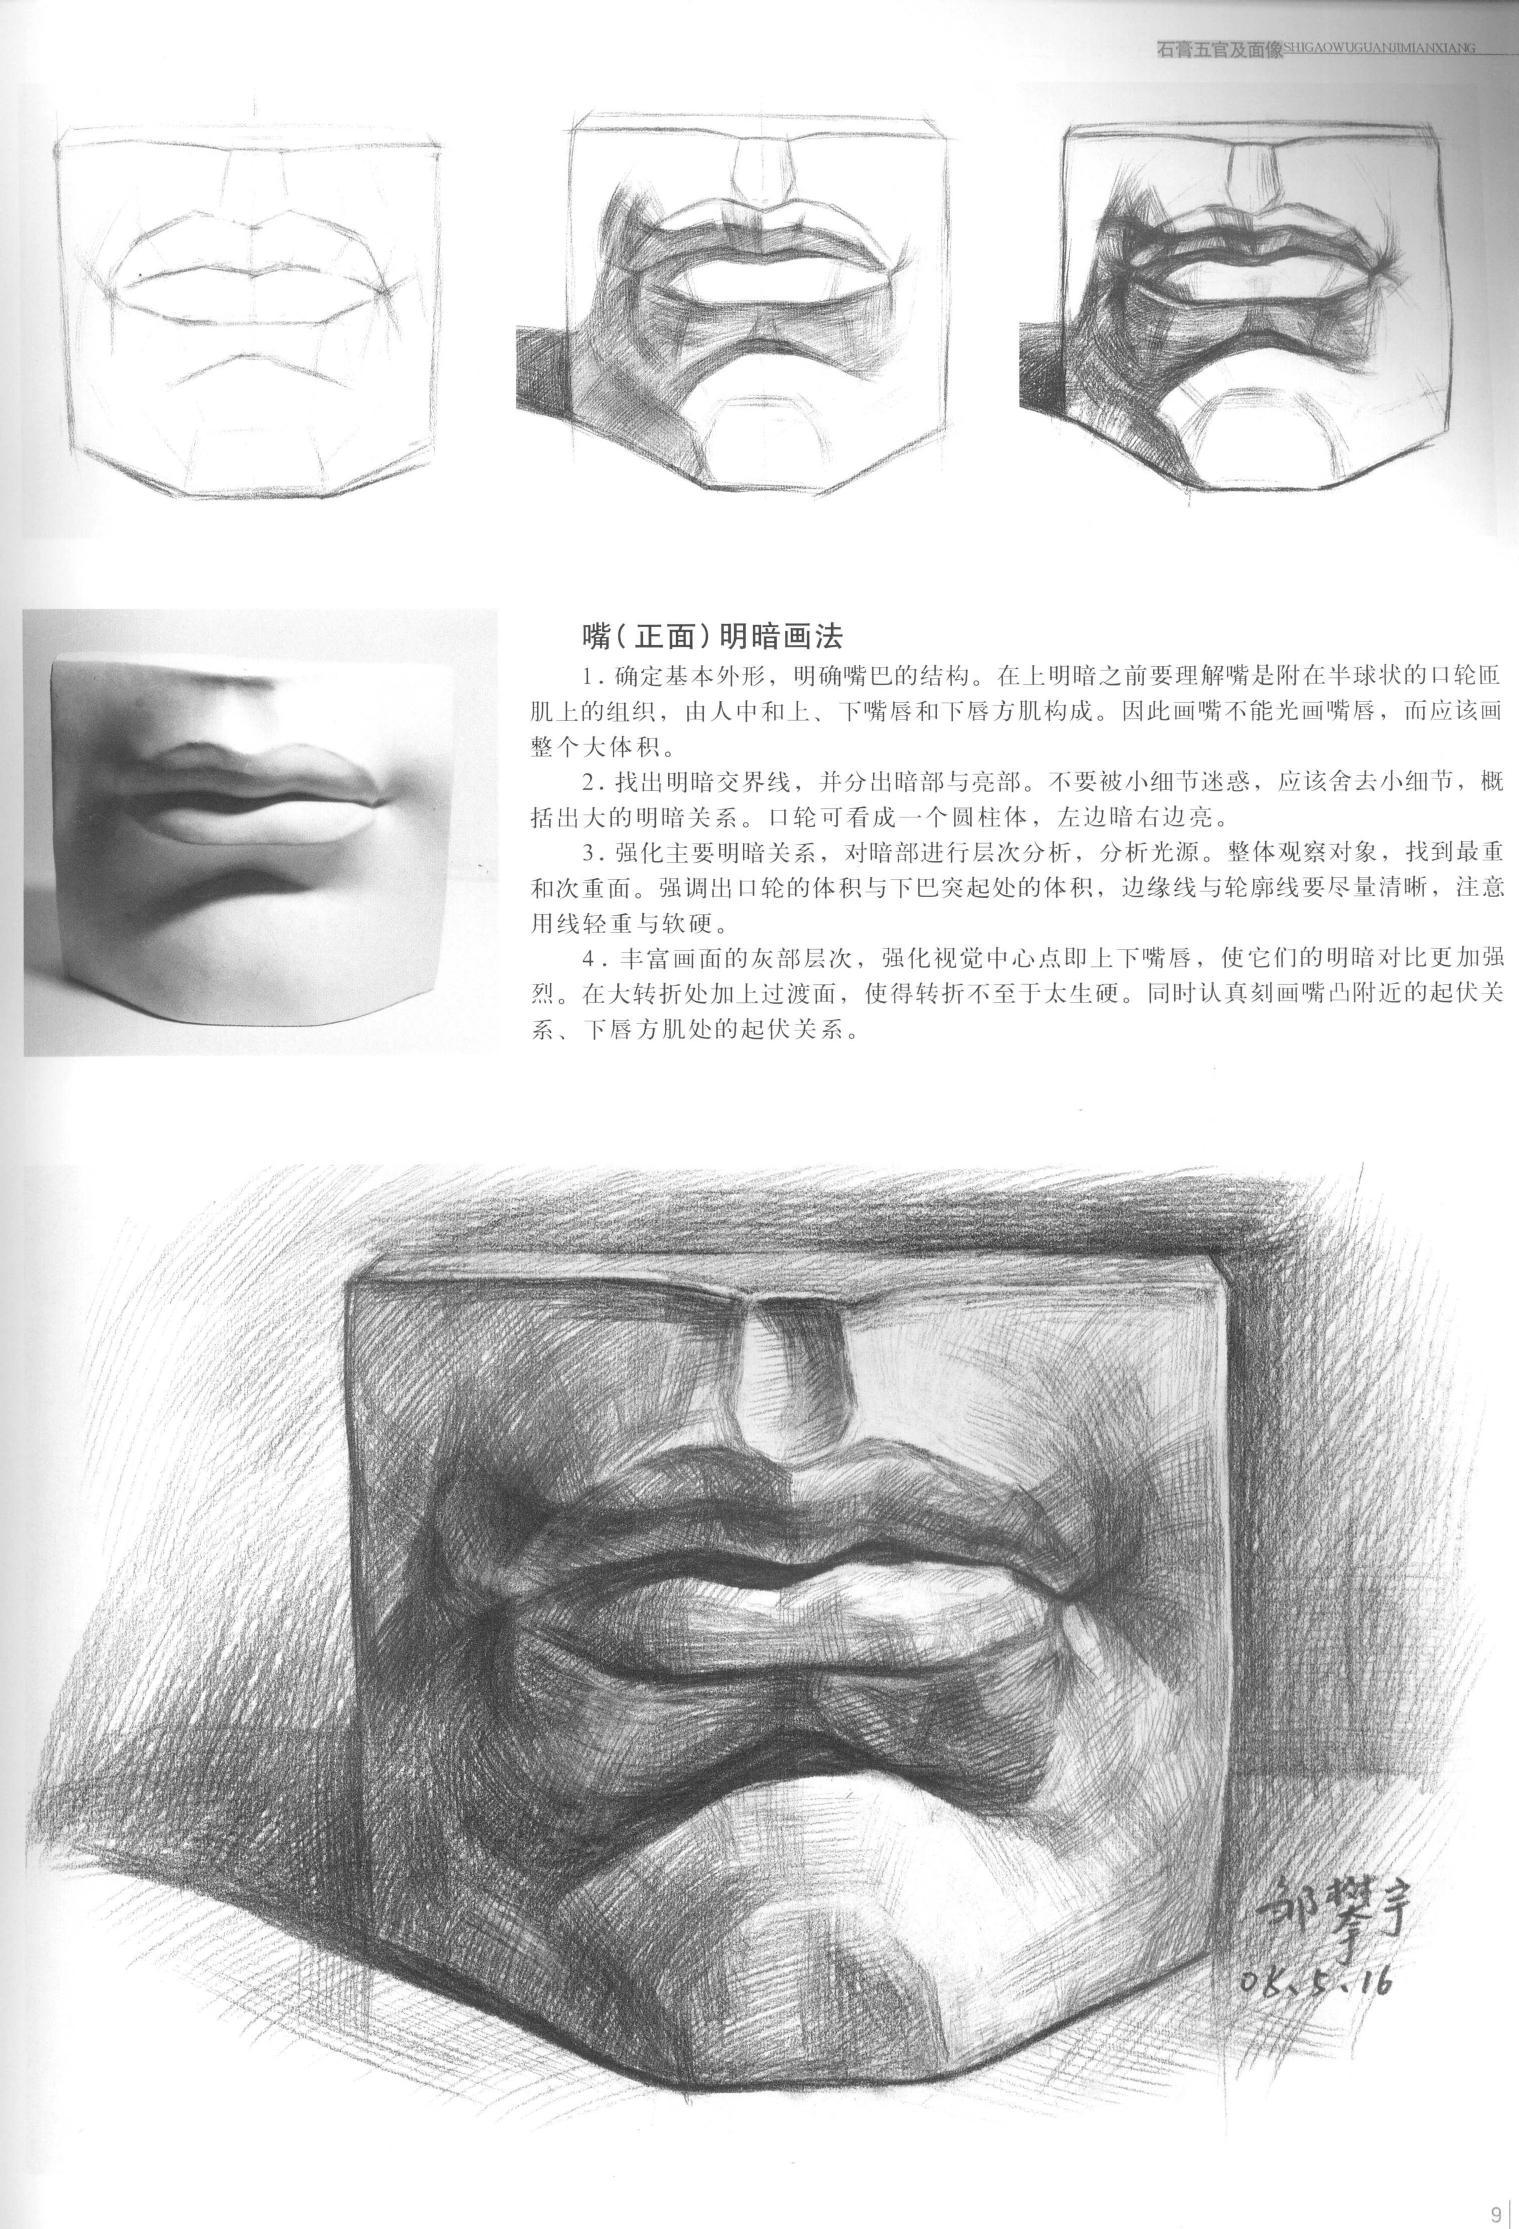 石膏像正面嘴的结构与素描讲解